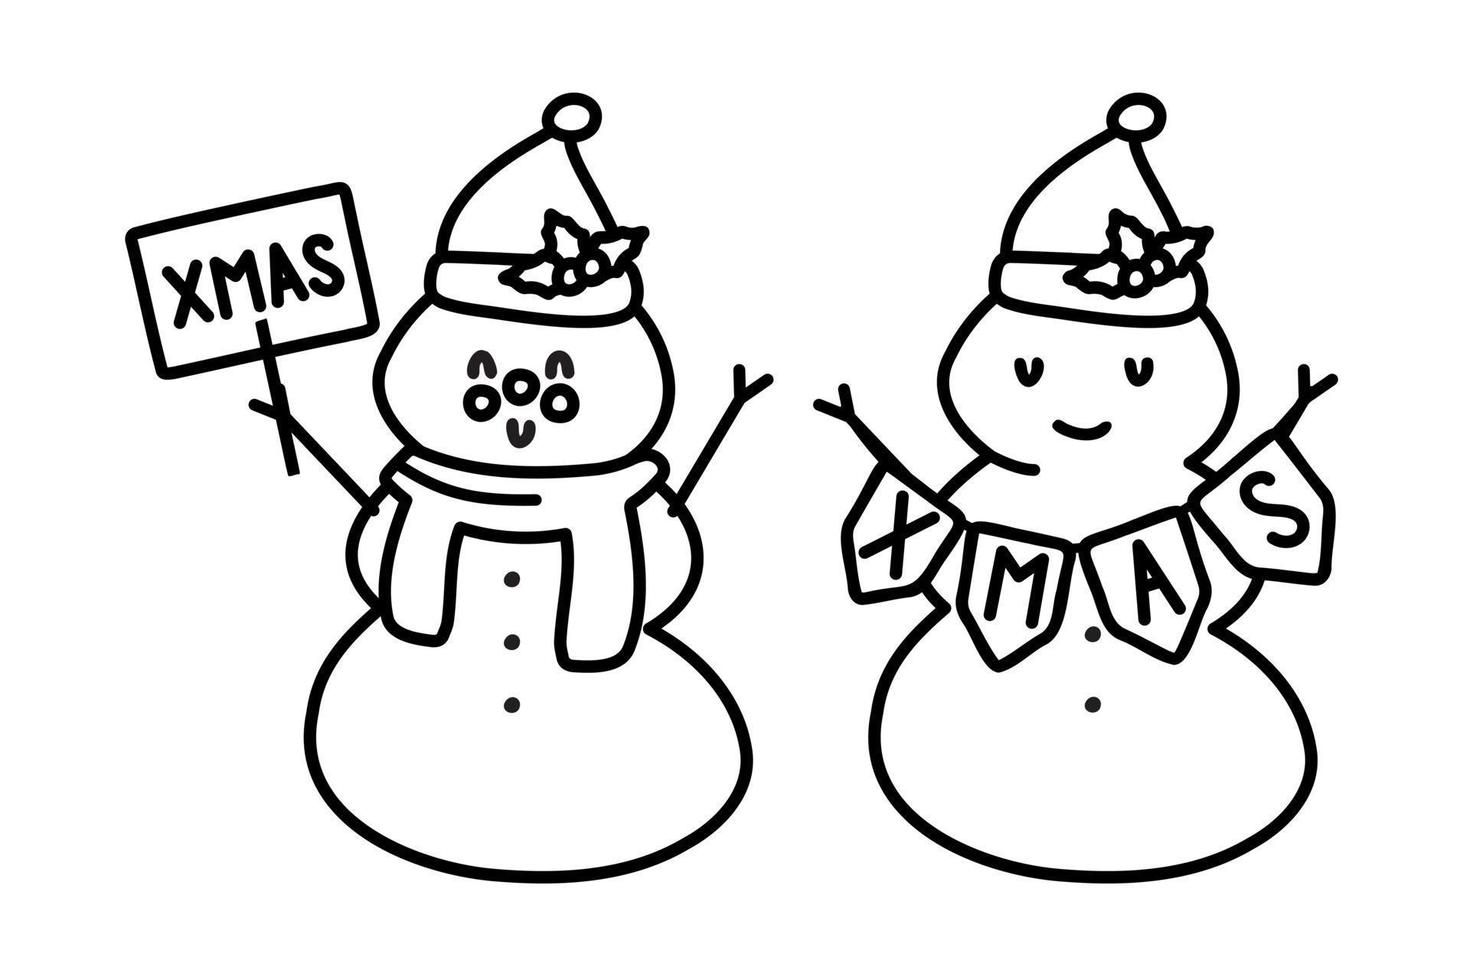 doodle hiver illustration d'un bonhomme de neige avec une carotte et un bonnet de noel. Noël. concevoir des cartes de vœux, des affiches, des emballages cadeaux. vecteur